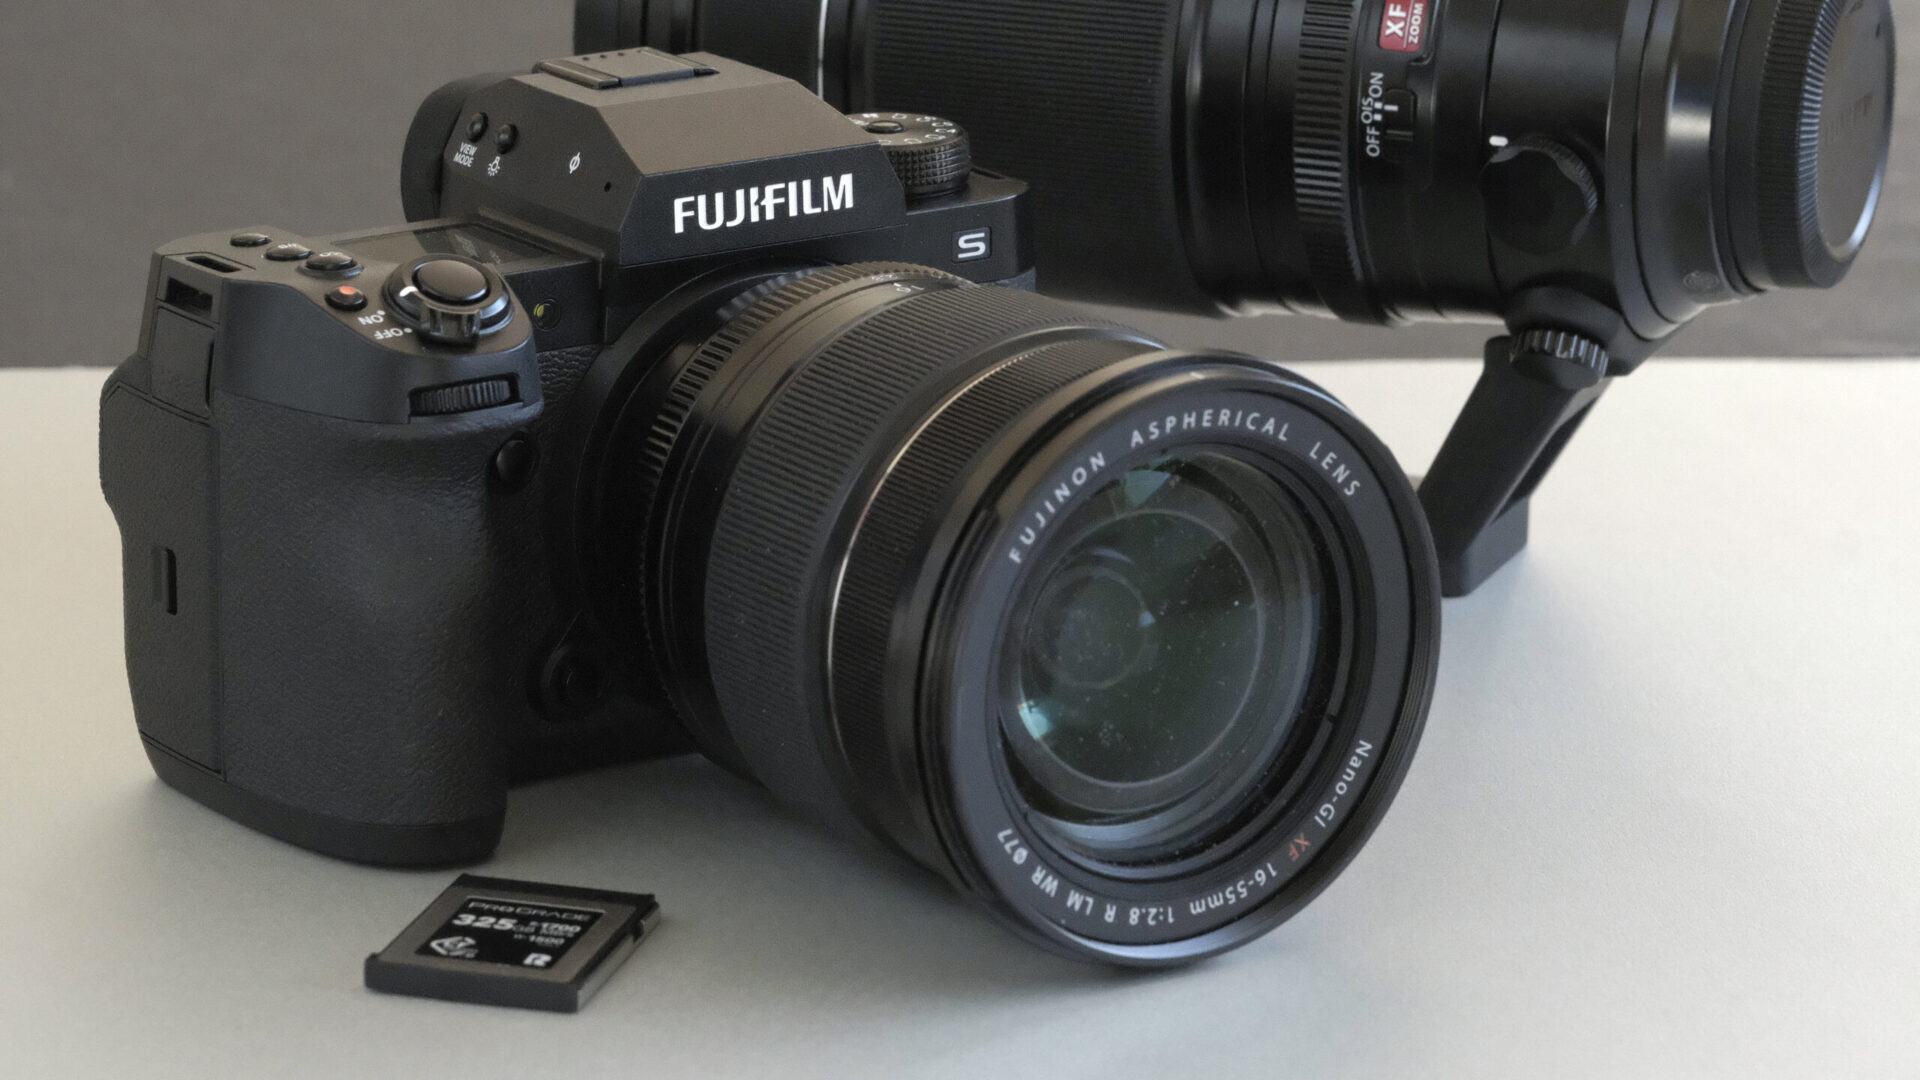 Fujifilm X-H2S -järjestelmäkamera